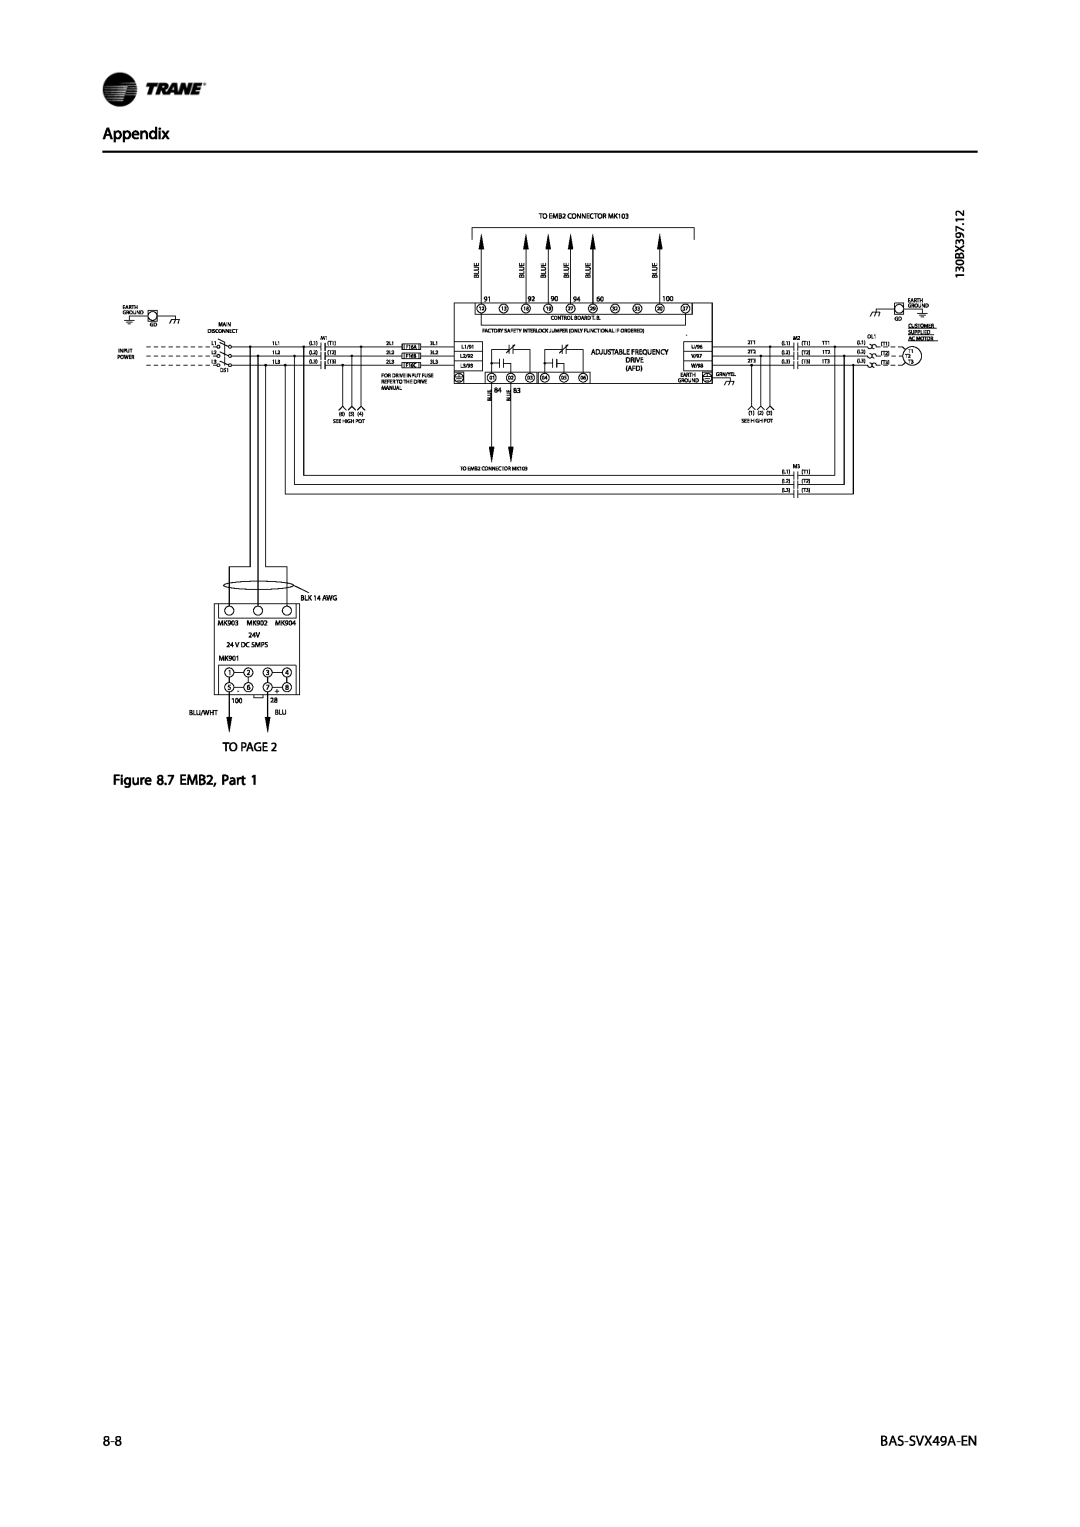 Trane TR200, Vertical Bypass/Non Bypass Panel specifications Appendix, 7 EMB2, Part, BAS-SVX49A-EN 